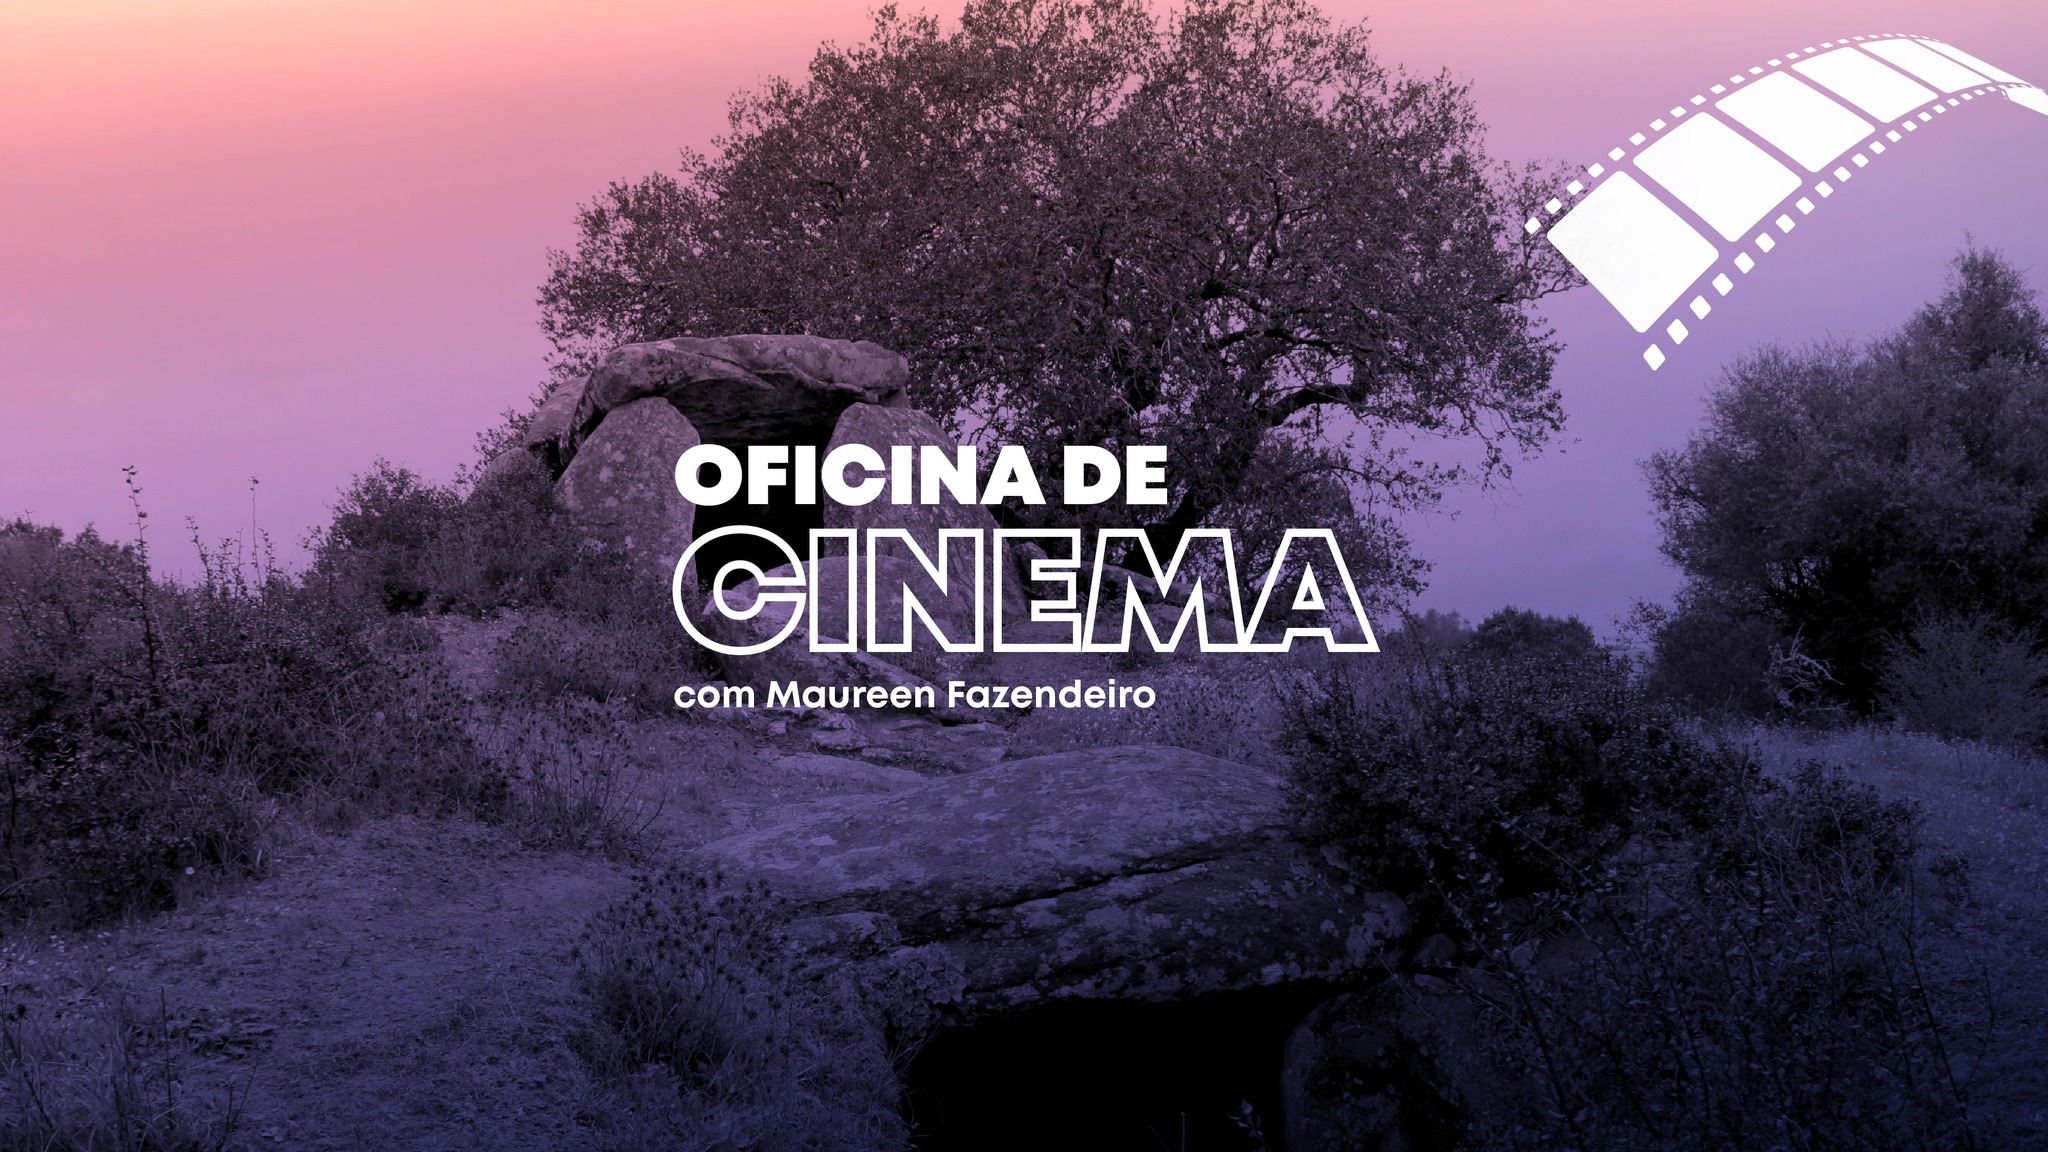 OFICINA DE CINEMA, COM MAUREEN FAZENDEIRO